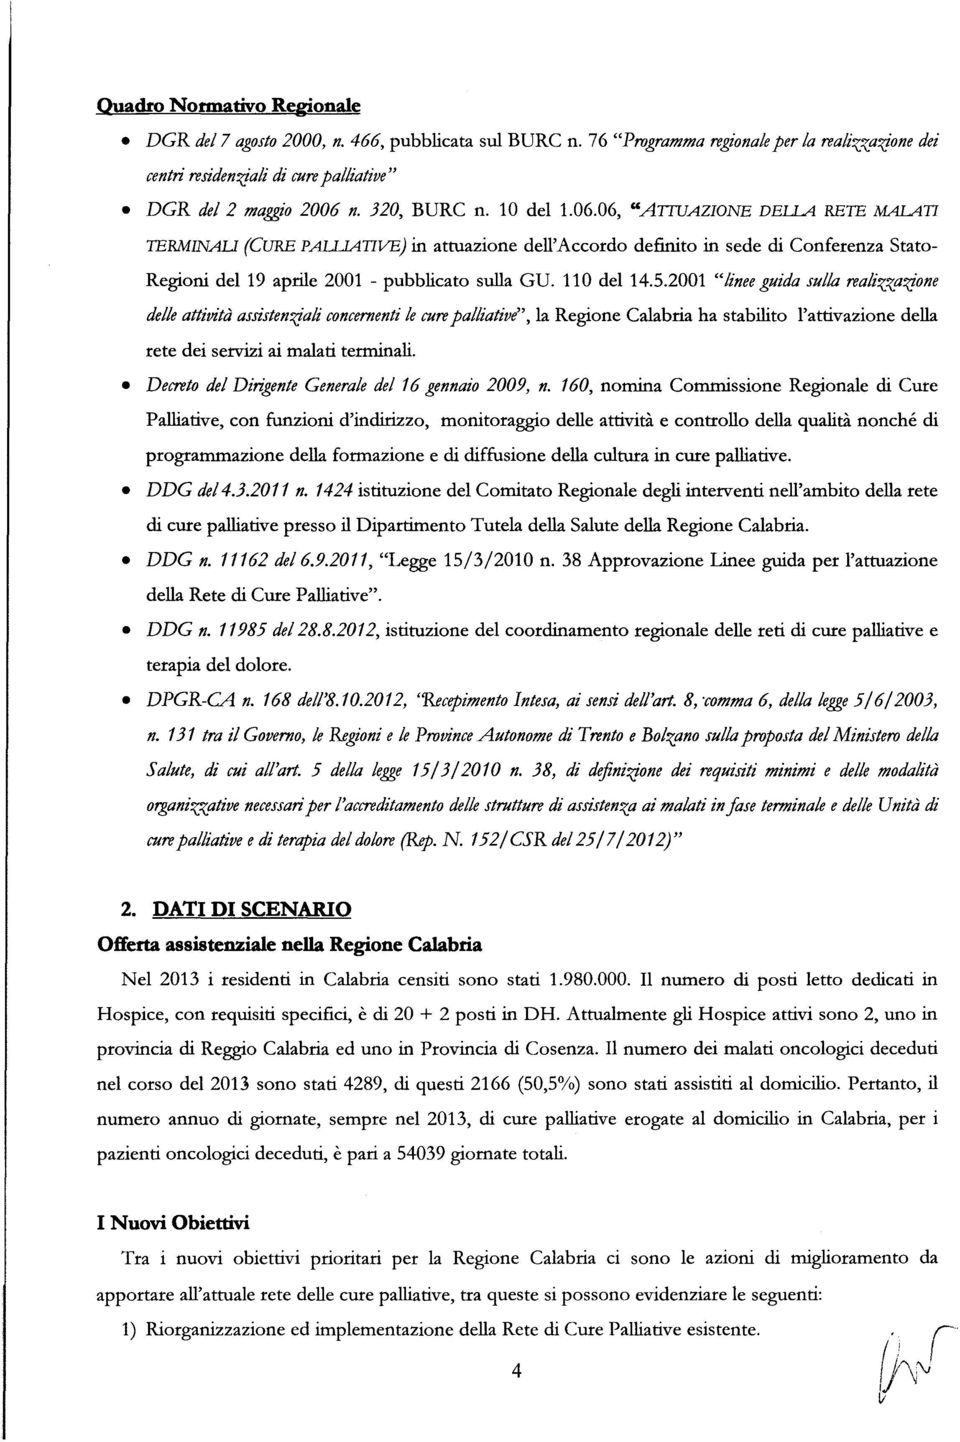 110 del 14.5.2001 "linee guida sulla realizzaifone delleattività assistenifali concernentile curepalliative", la Regione Calabria ha stabilito l'attivazione della rete dei servizi ai malati terminali.